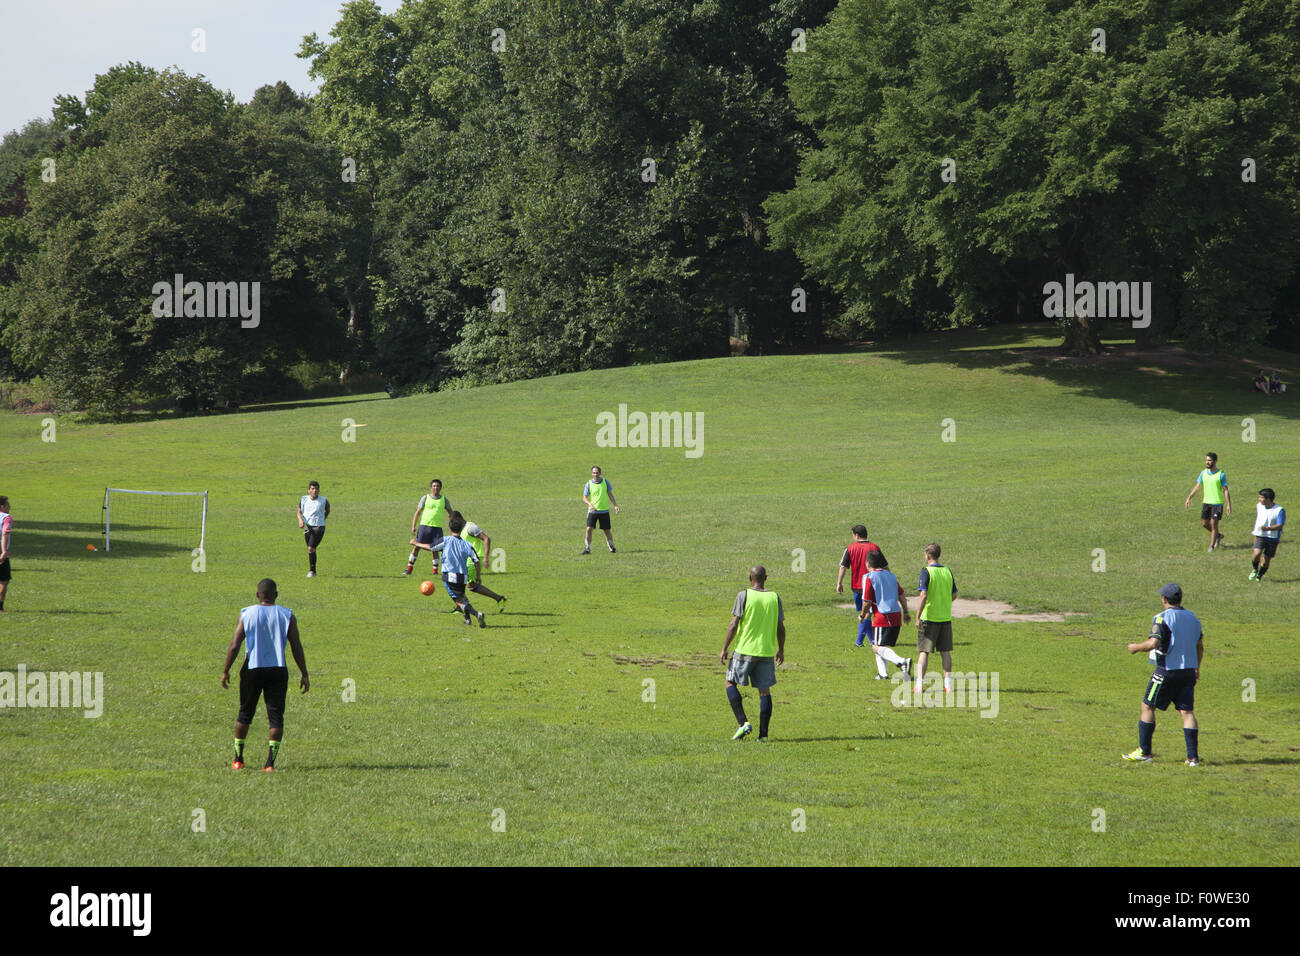 Mañana juego de fútbol a lo largo de la 'larga pradera' en Prospect Park, Brooklyn, NY. Foto de stock